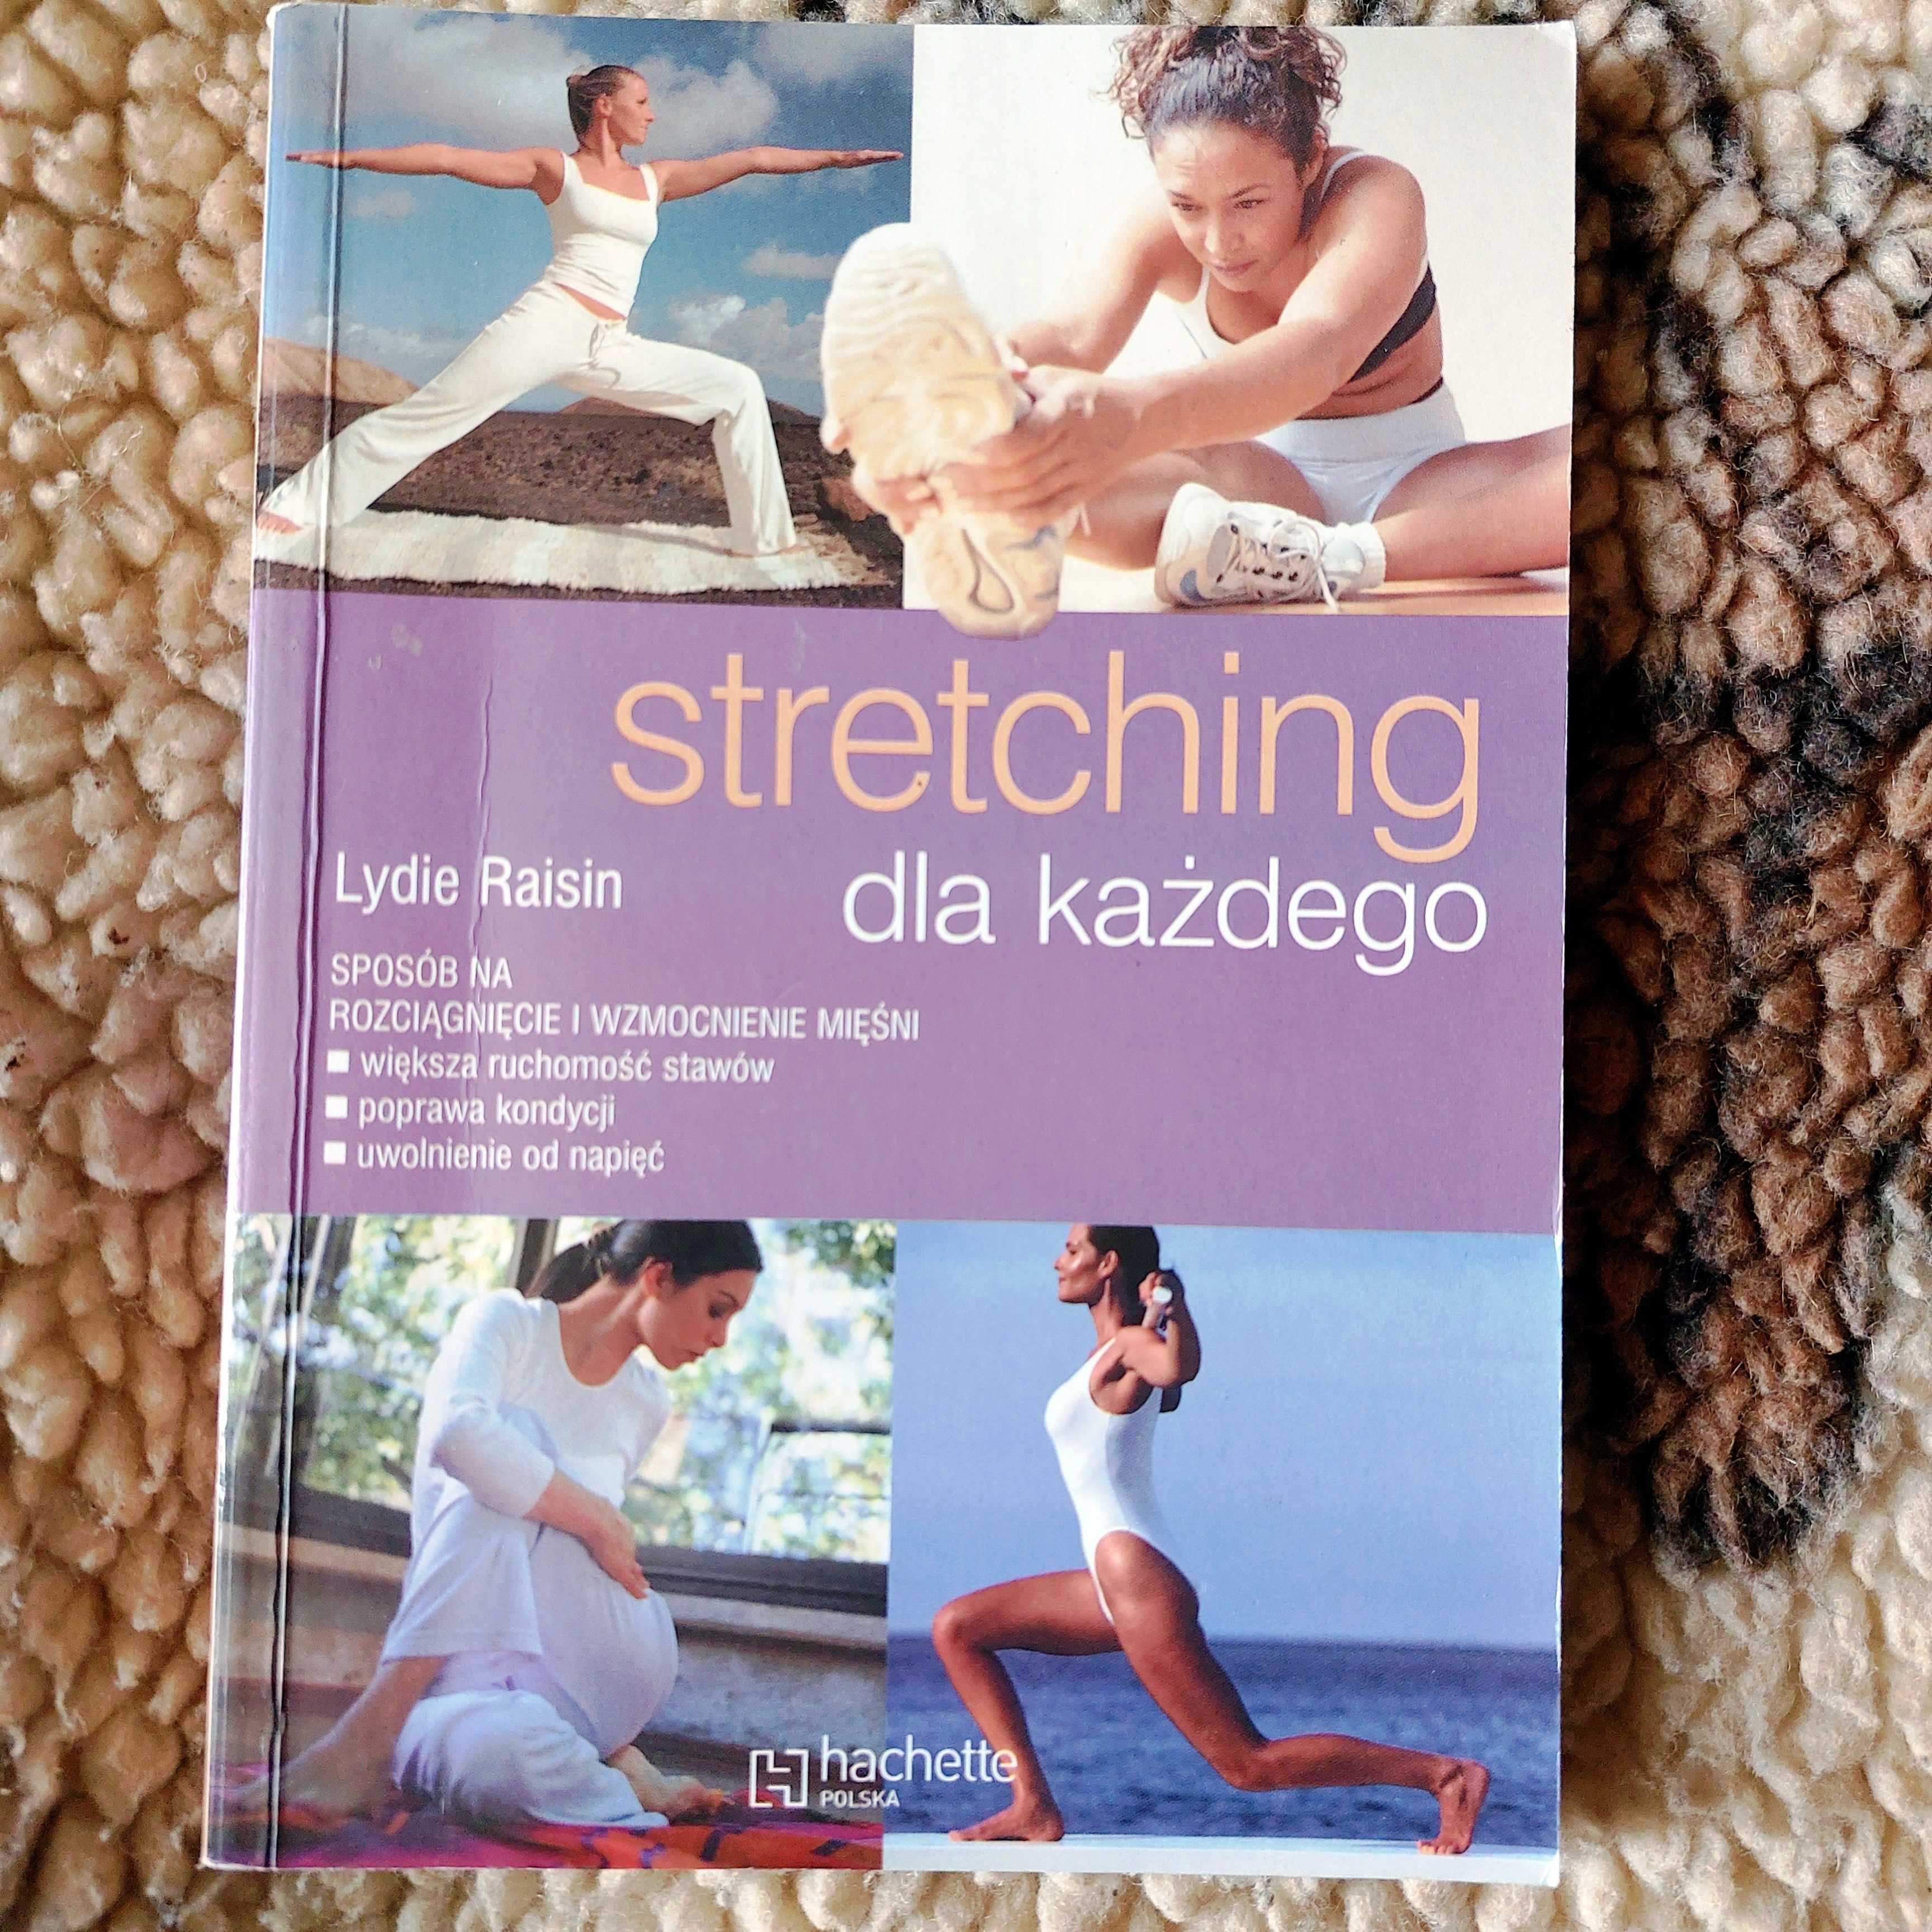 Stretching dla każdego - Lydie Raisin